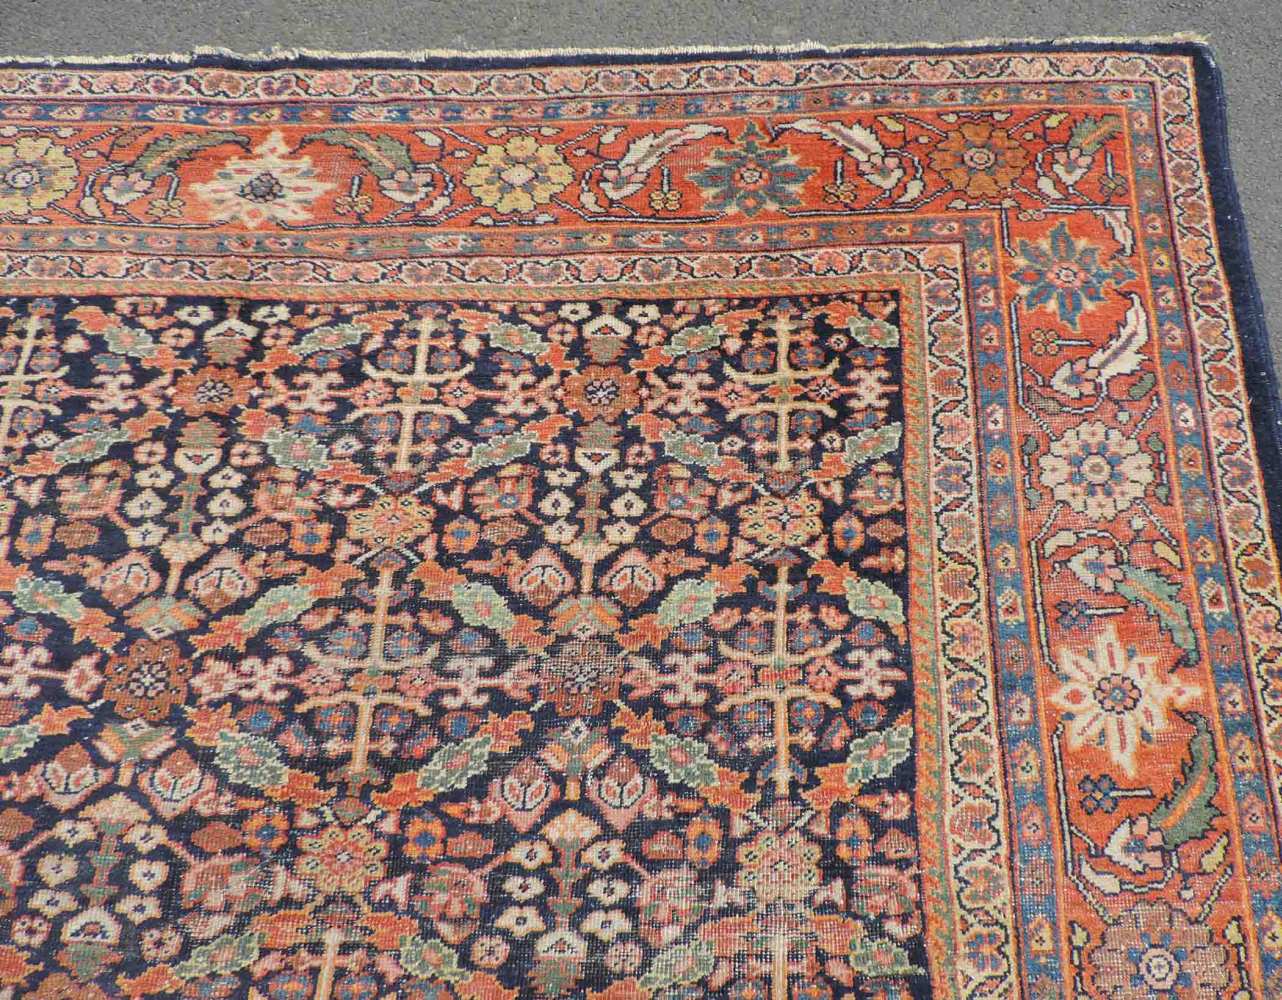 Mahal Salonteppich, Iran. Antik, um 1900. 345 cmx 275 cm. Handgeknüpft in Persien. Wolle auf - Image 5 of 8